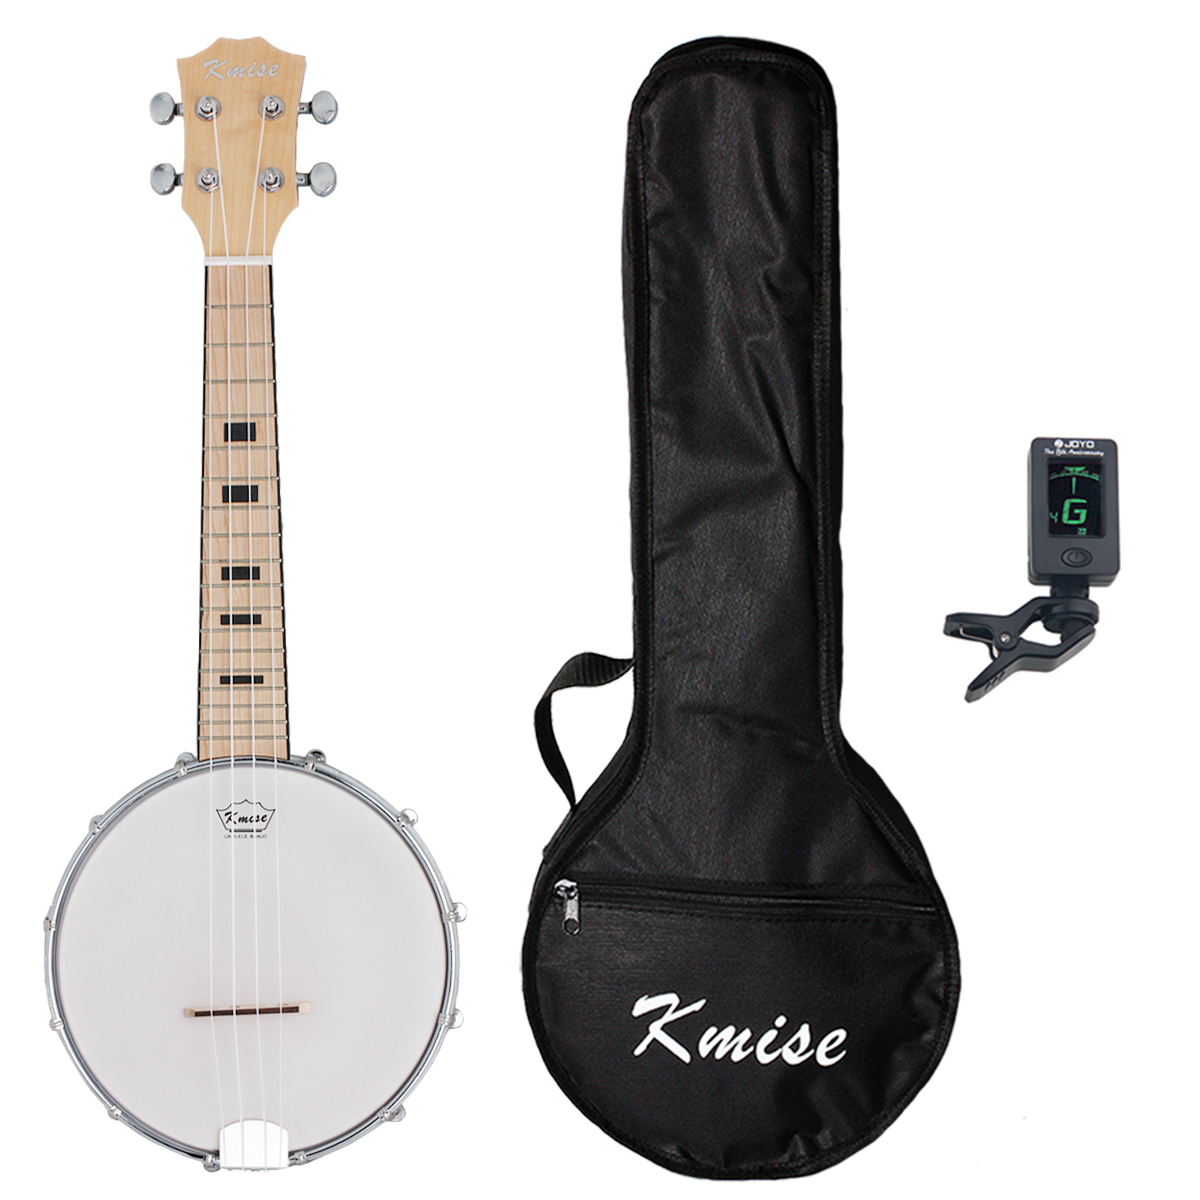 Kmise Banjo Ukulele Banjolele 4 String Ukelele Uke Concert 23 Inch Size Maple with Bag Tuner